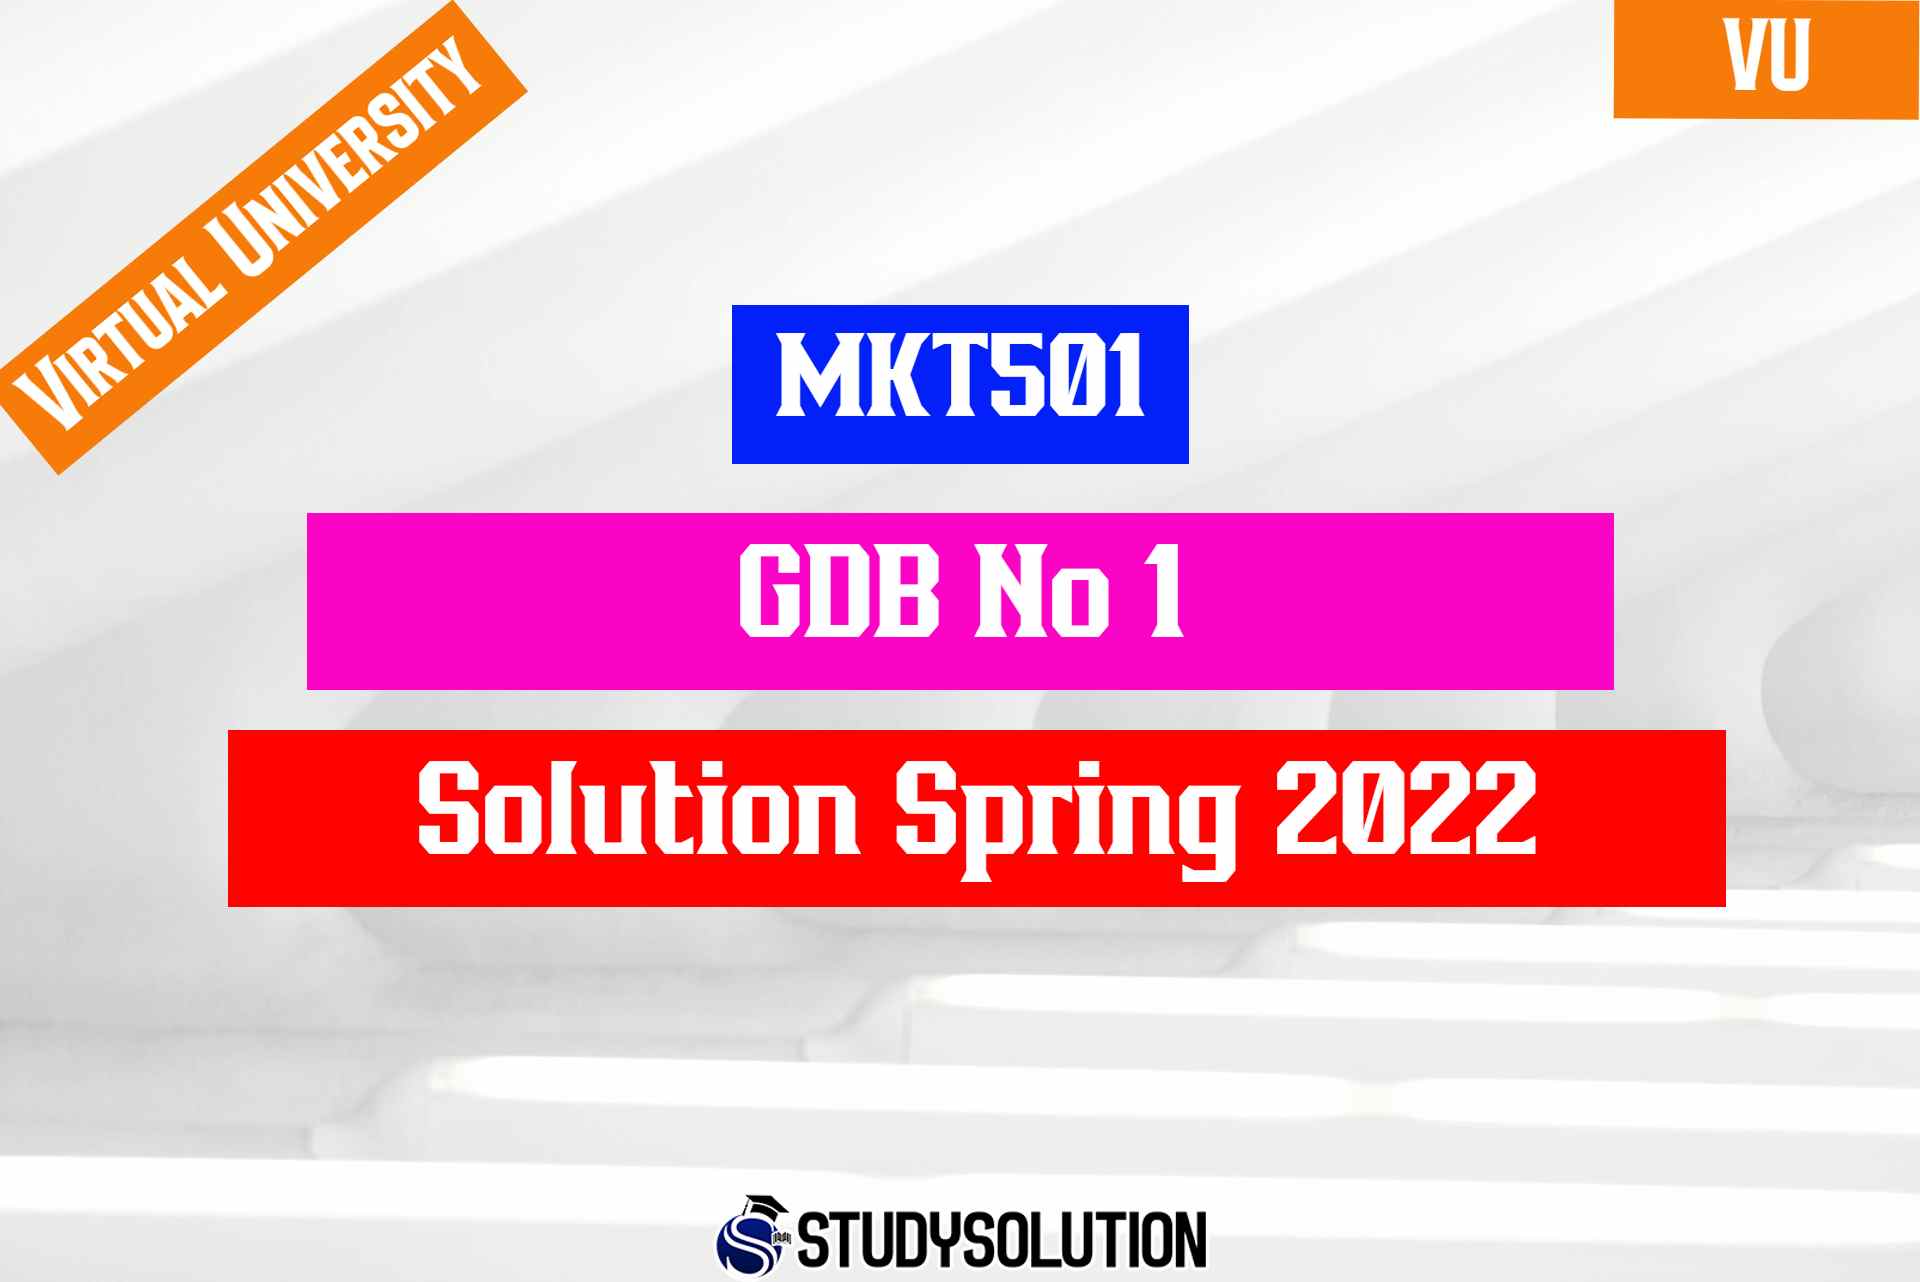 MKT501 GDB No 1 Solution Spring 2022